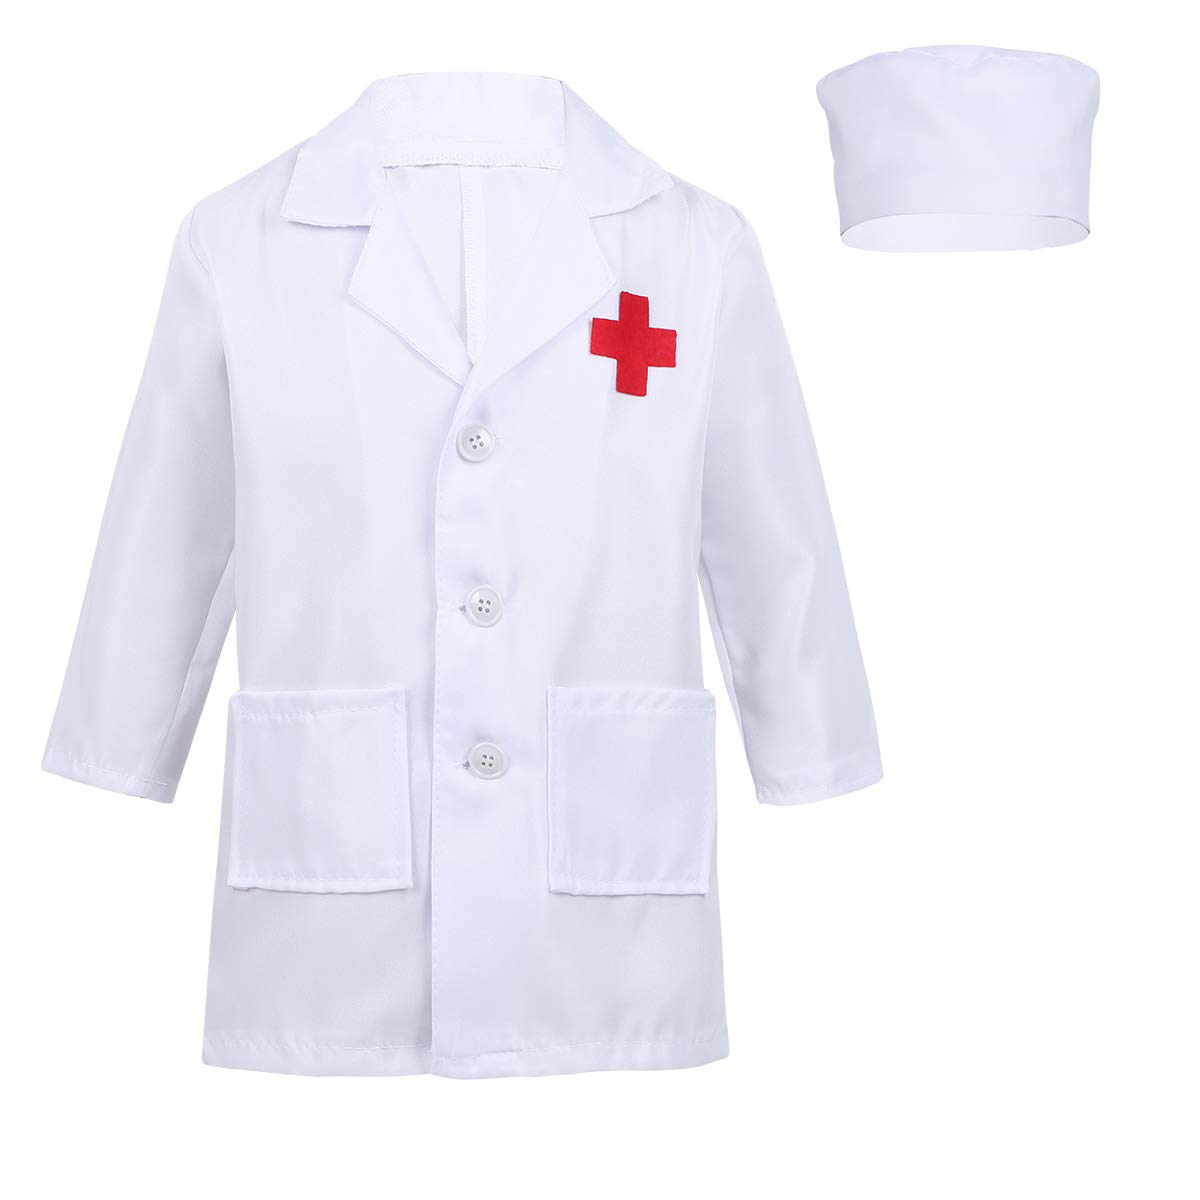 Doctor uniform